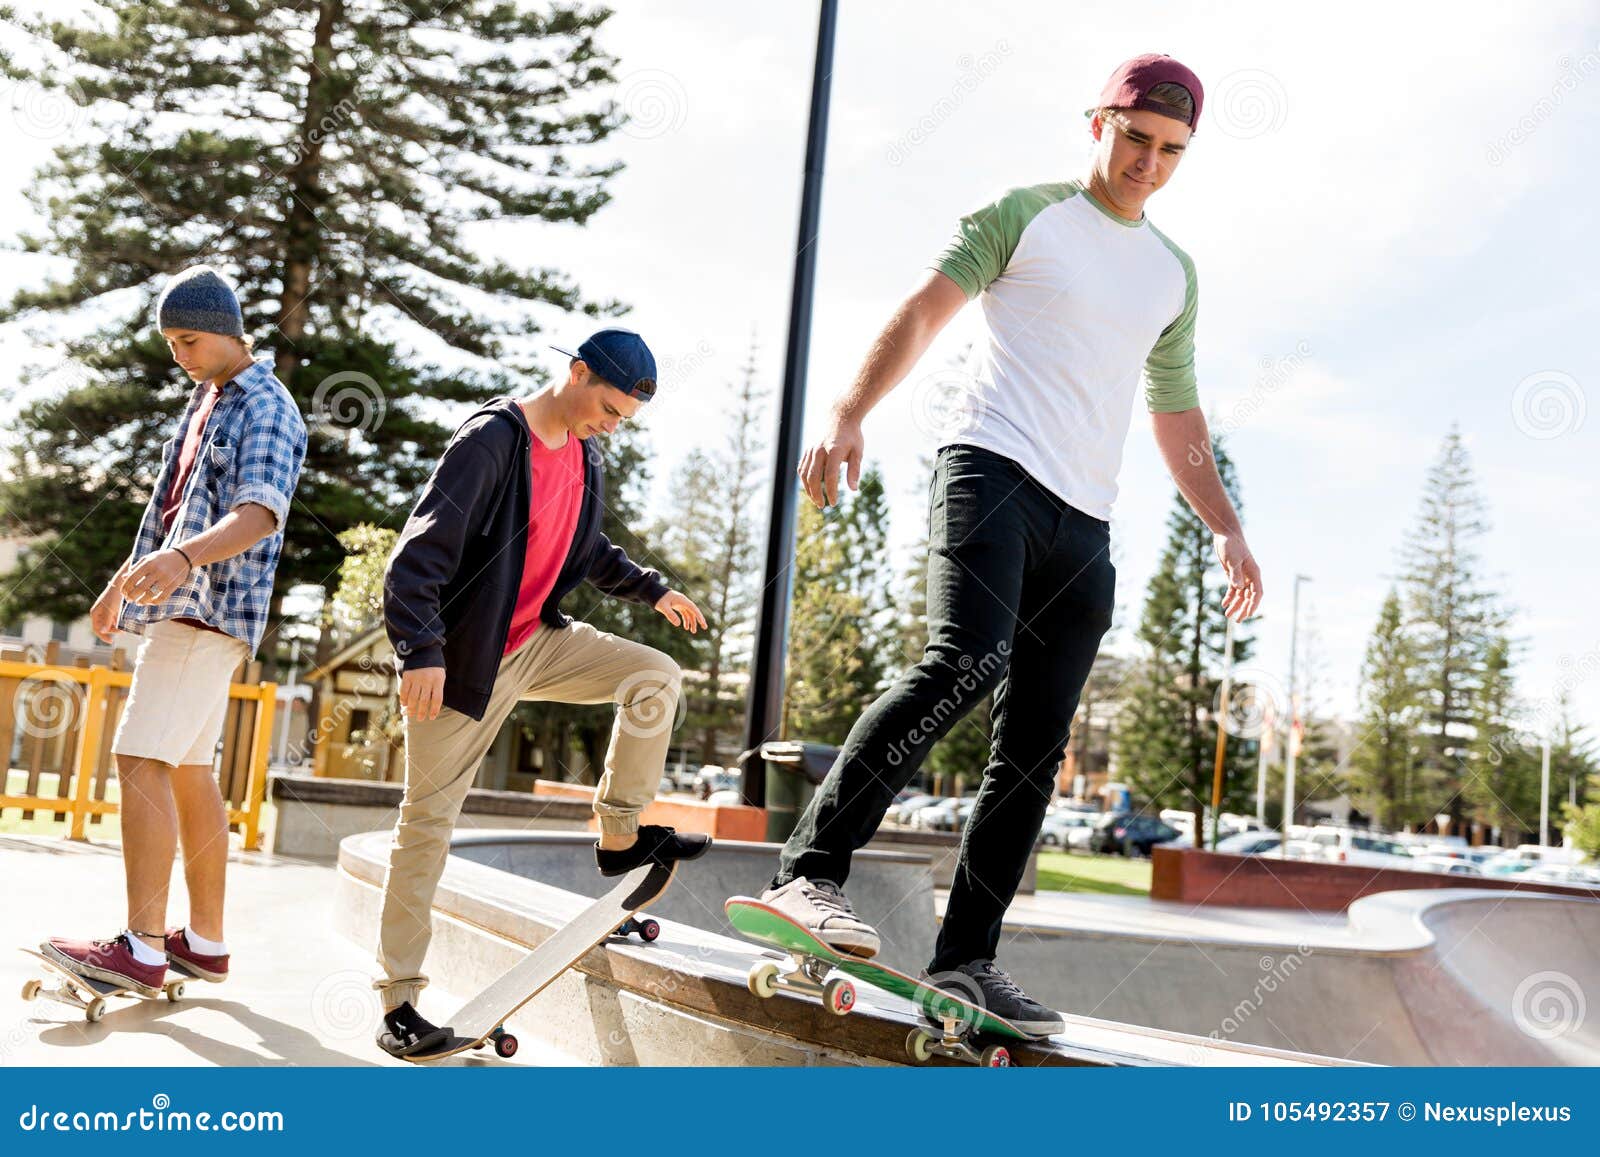 Teenage Boys Skateboarding Outdoors Stock Image - Image of boys, athletic:  105492357